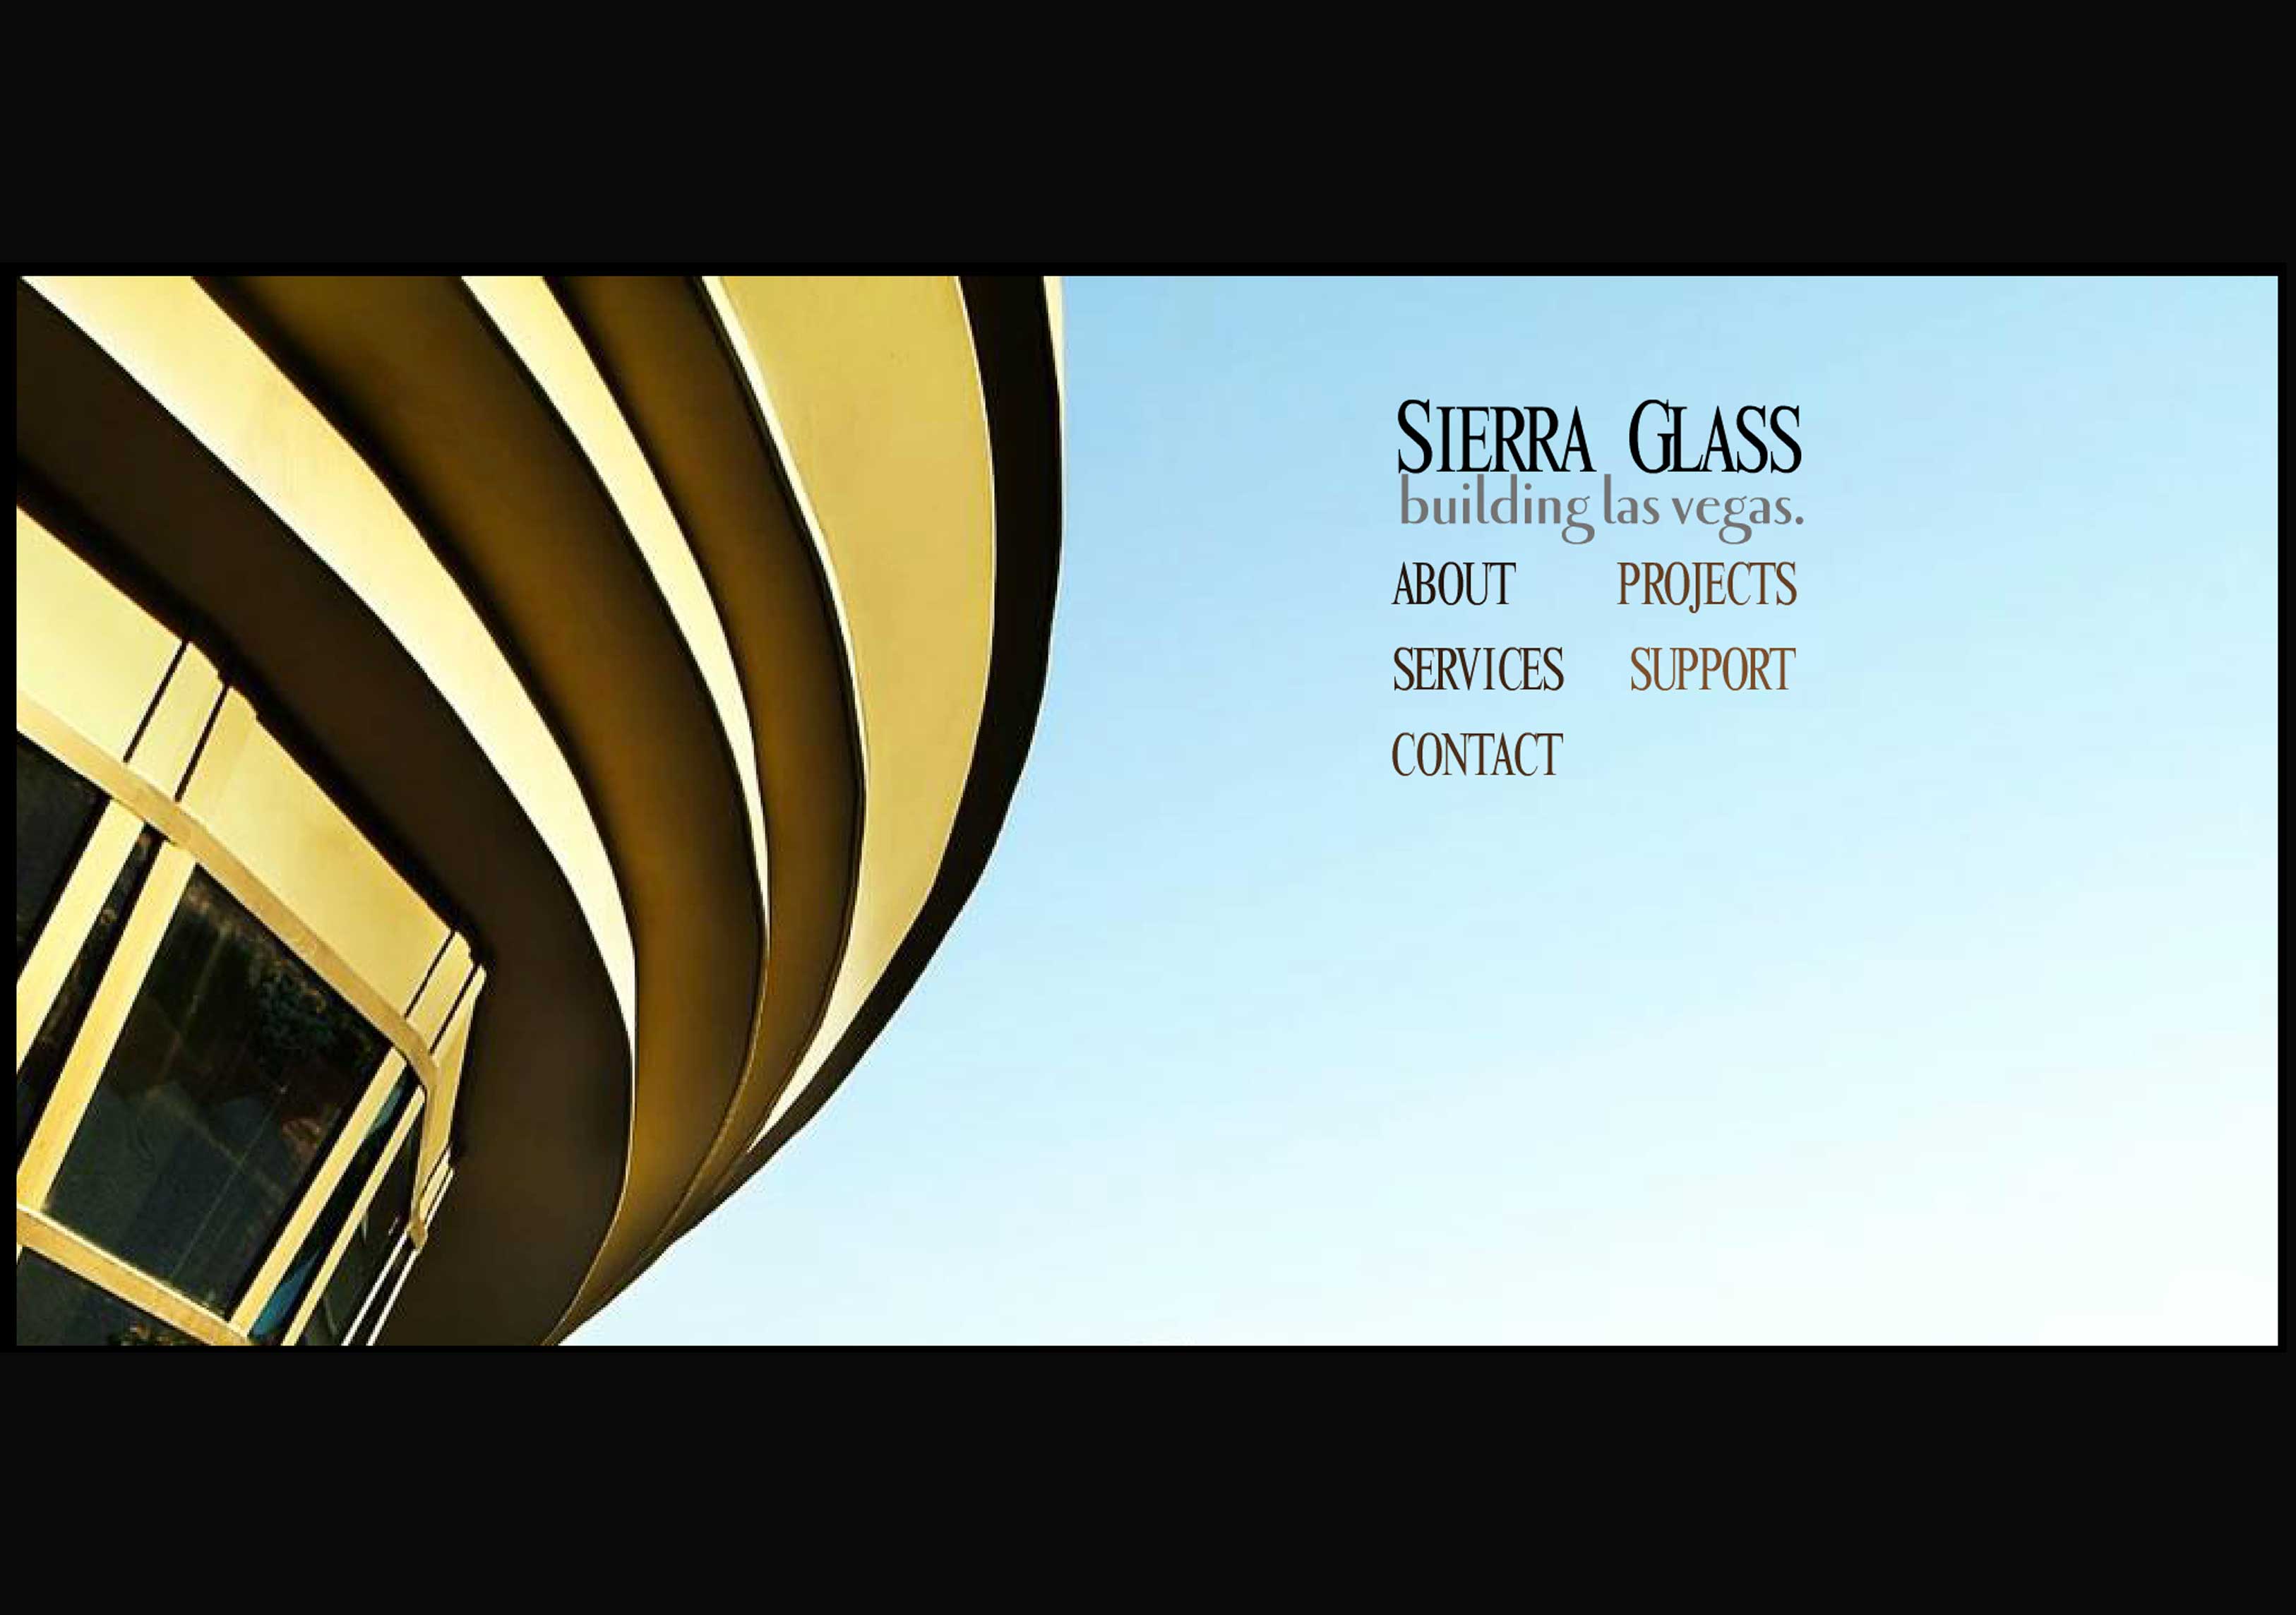 Sierra Glass